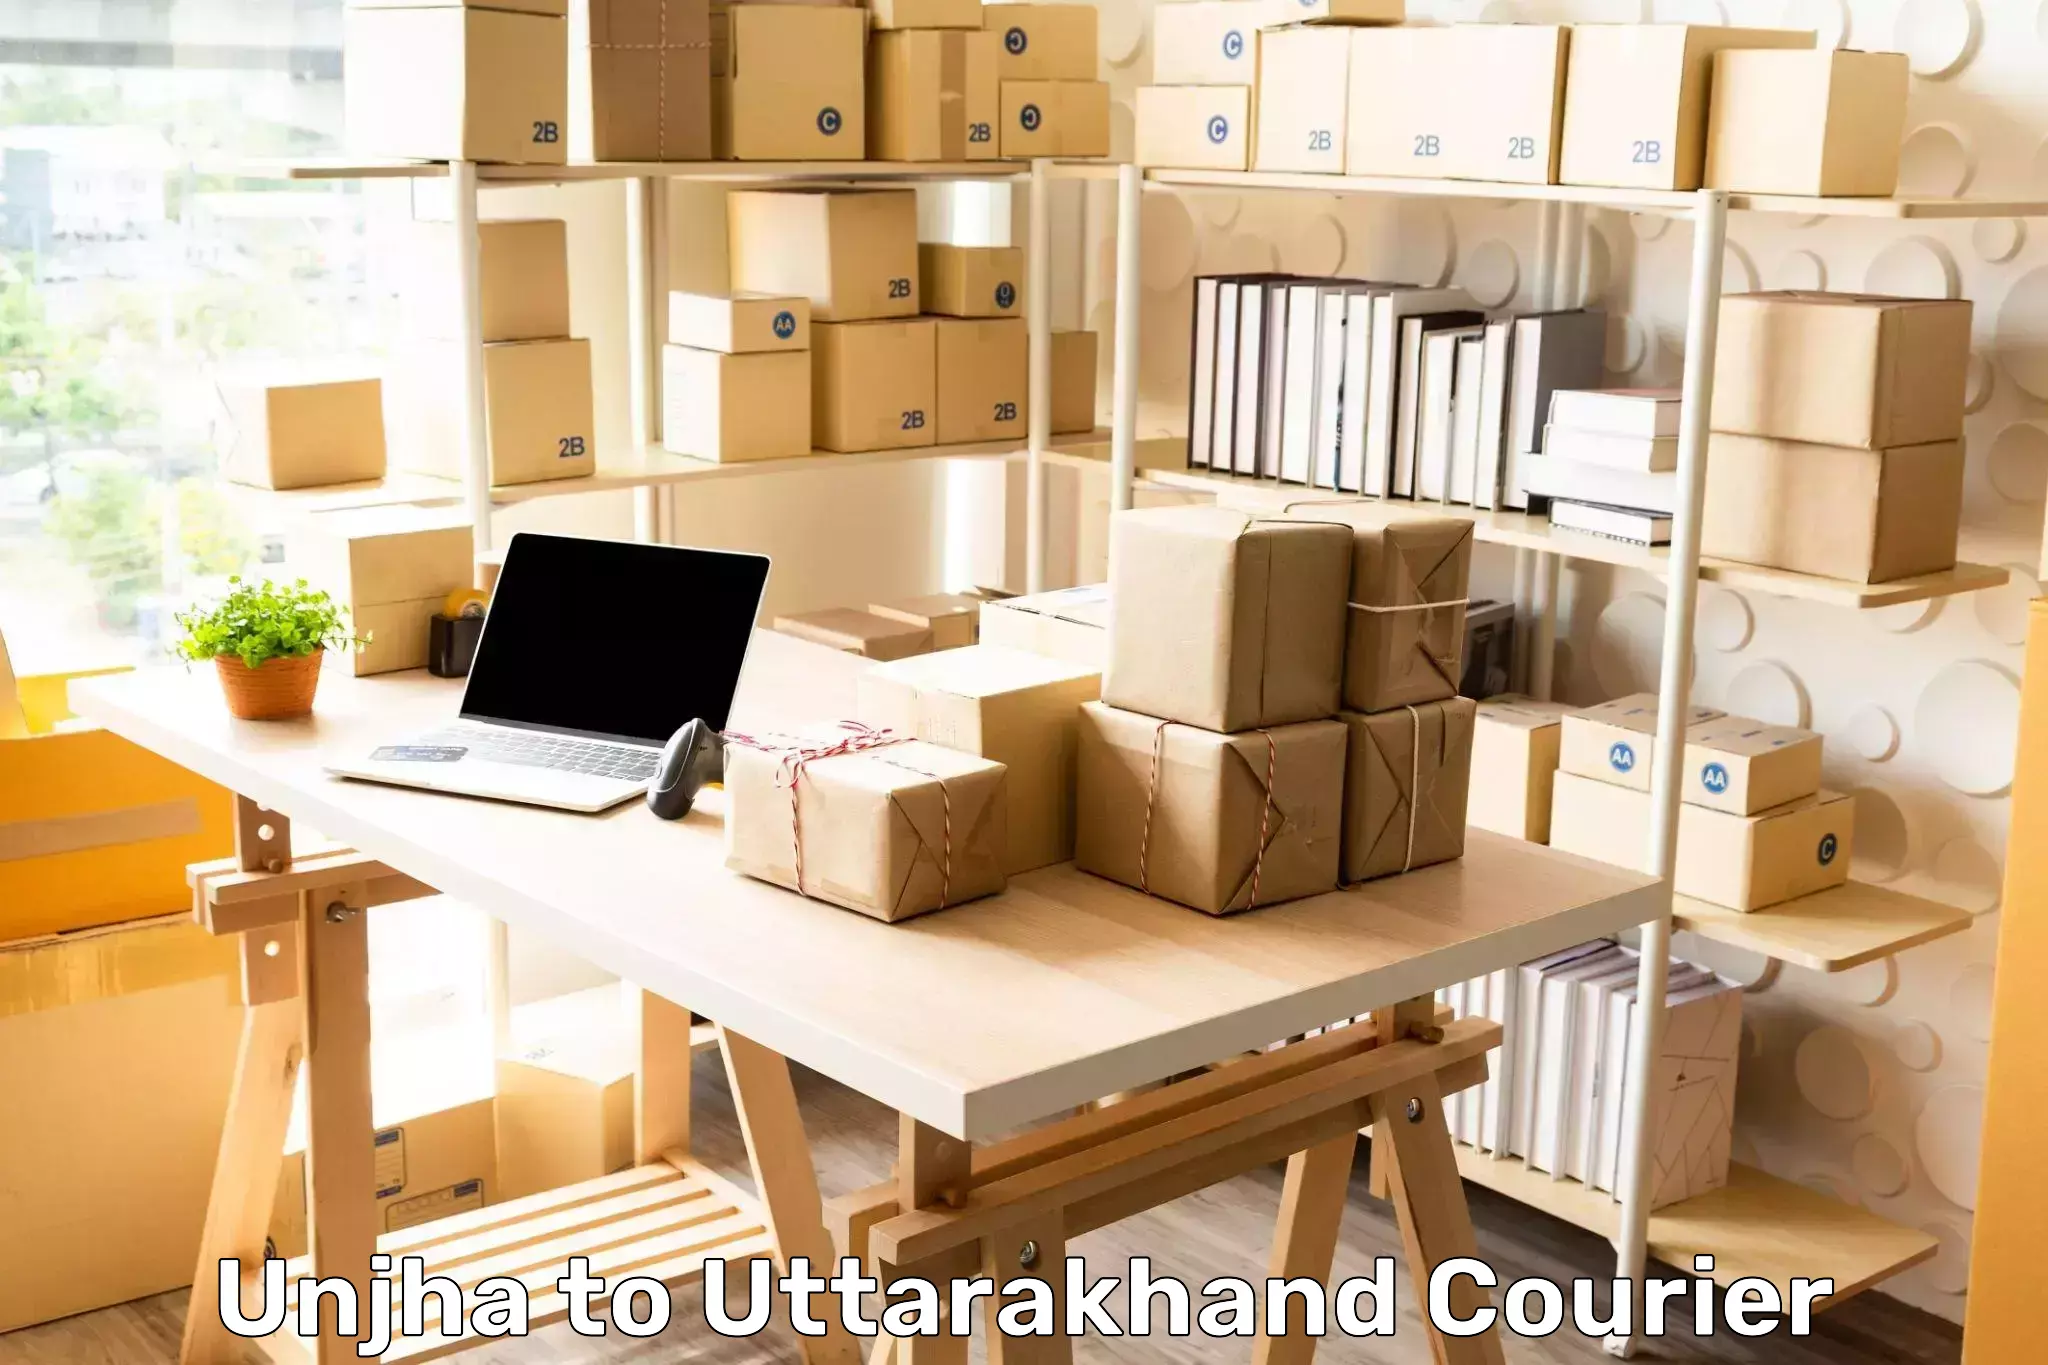 Supply chain delivery Unjha to Dehradun